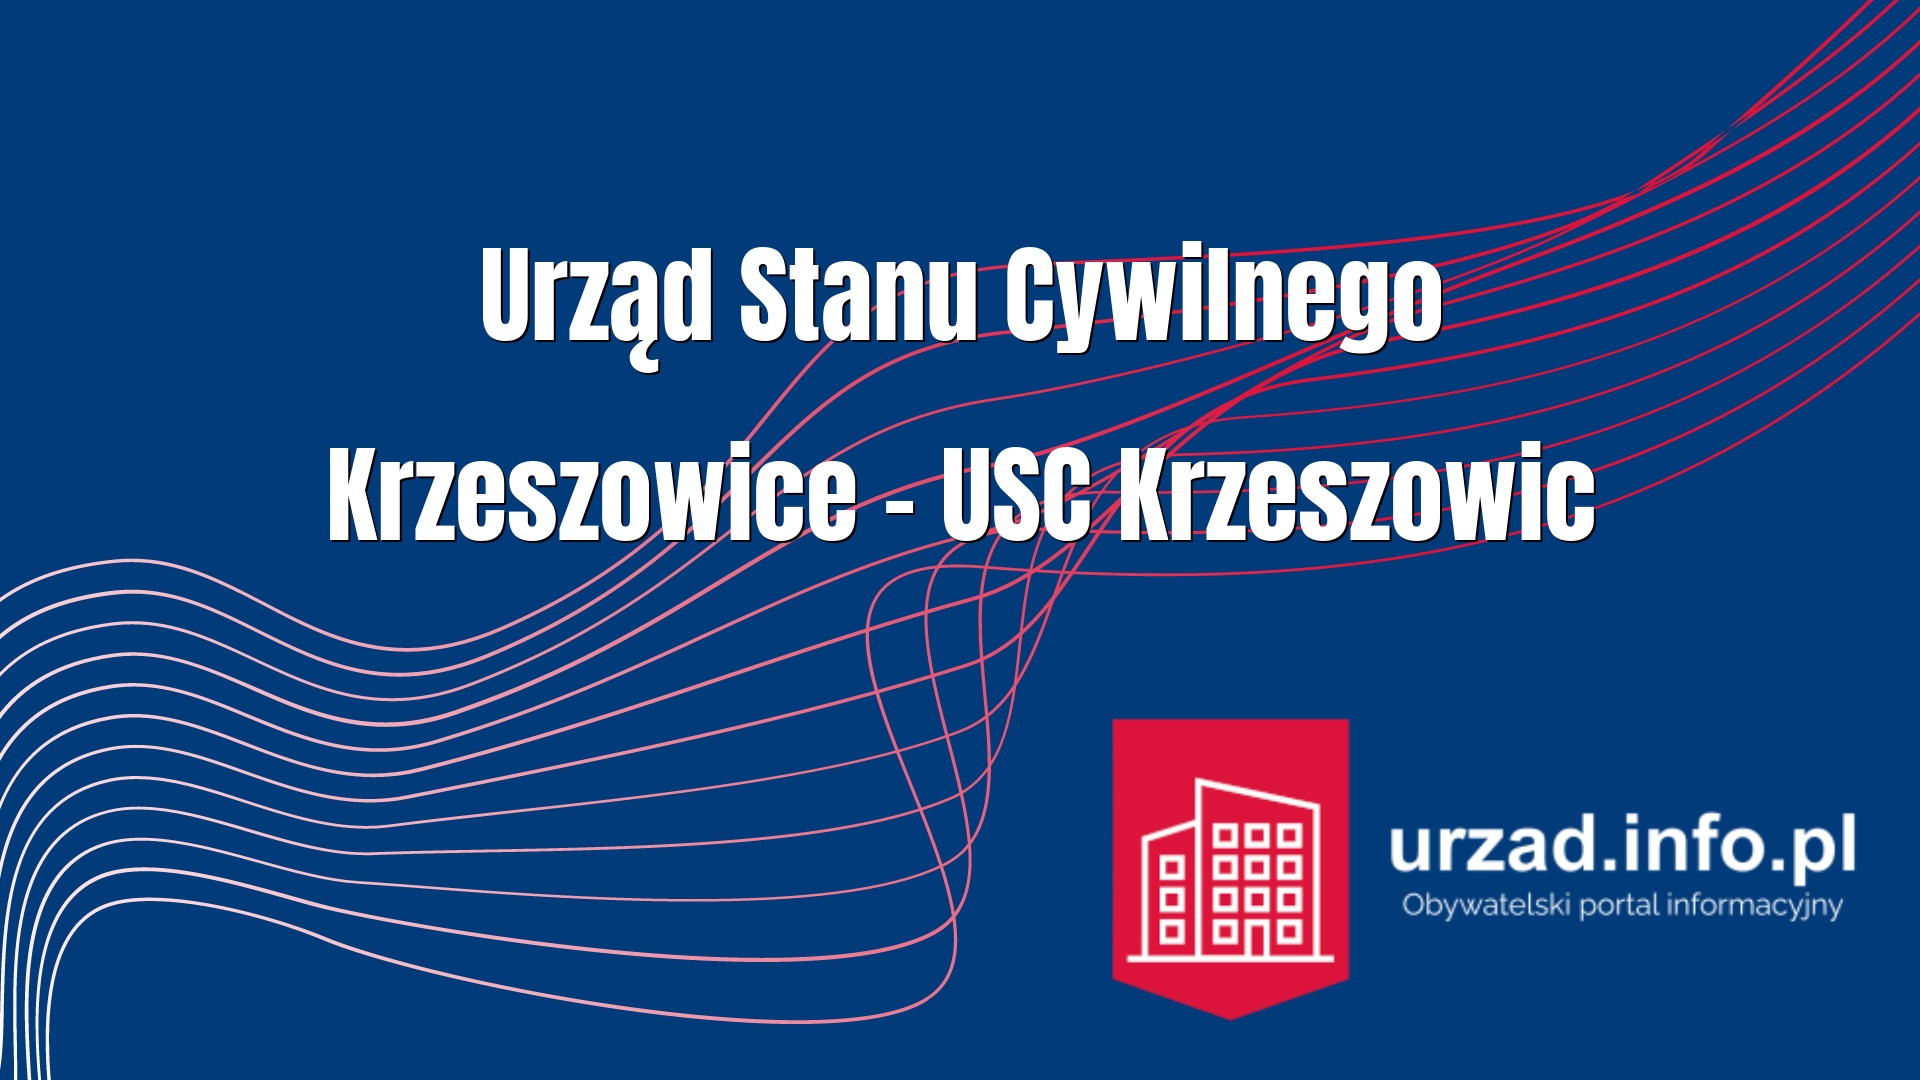 Urząd Stanu Cywilnego Krzeszowice – USC Krzeszowic